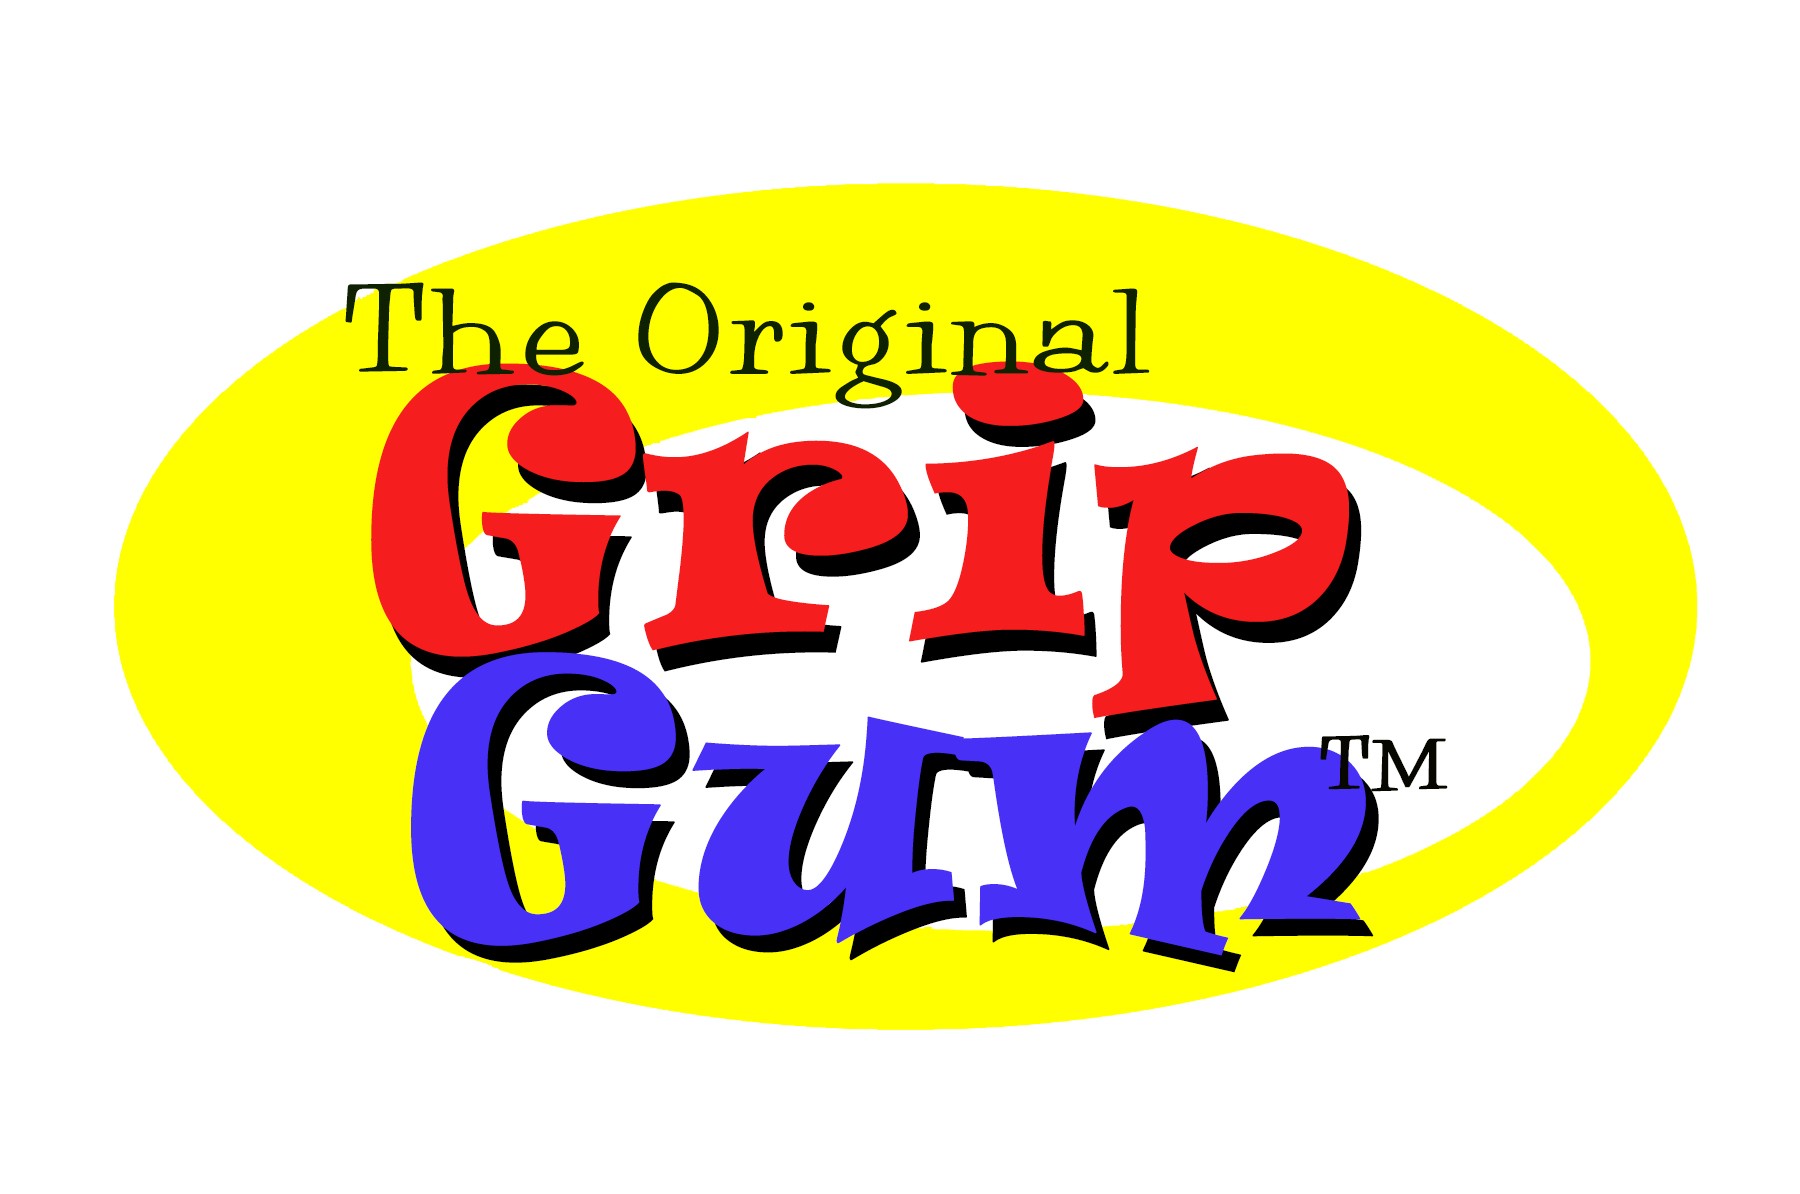 Grip Gum